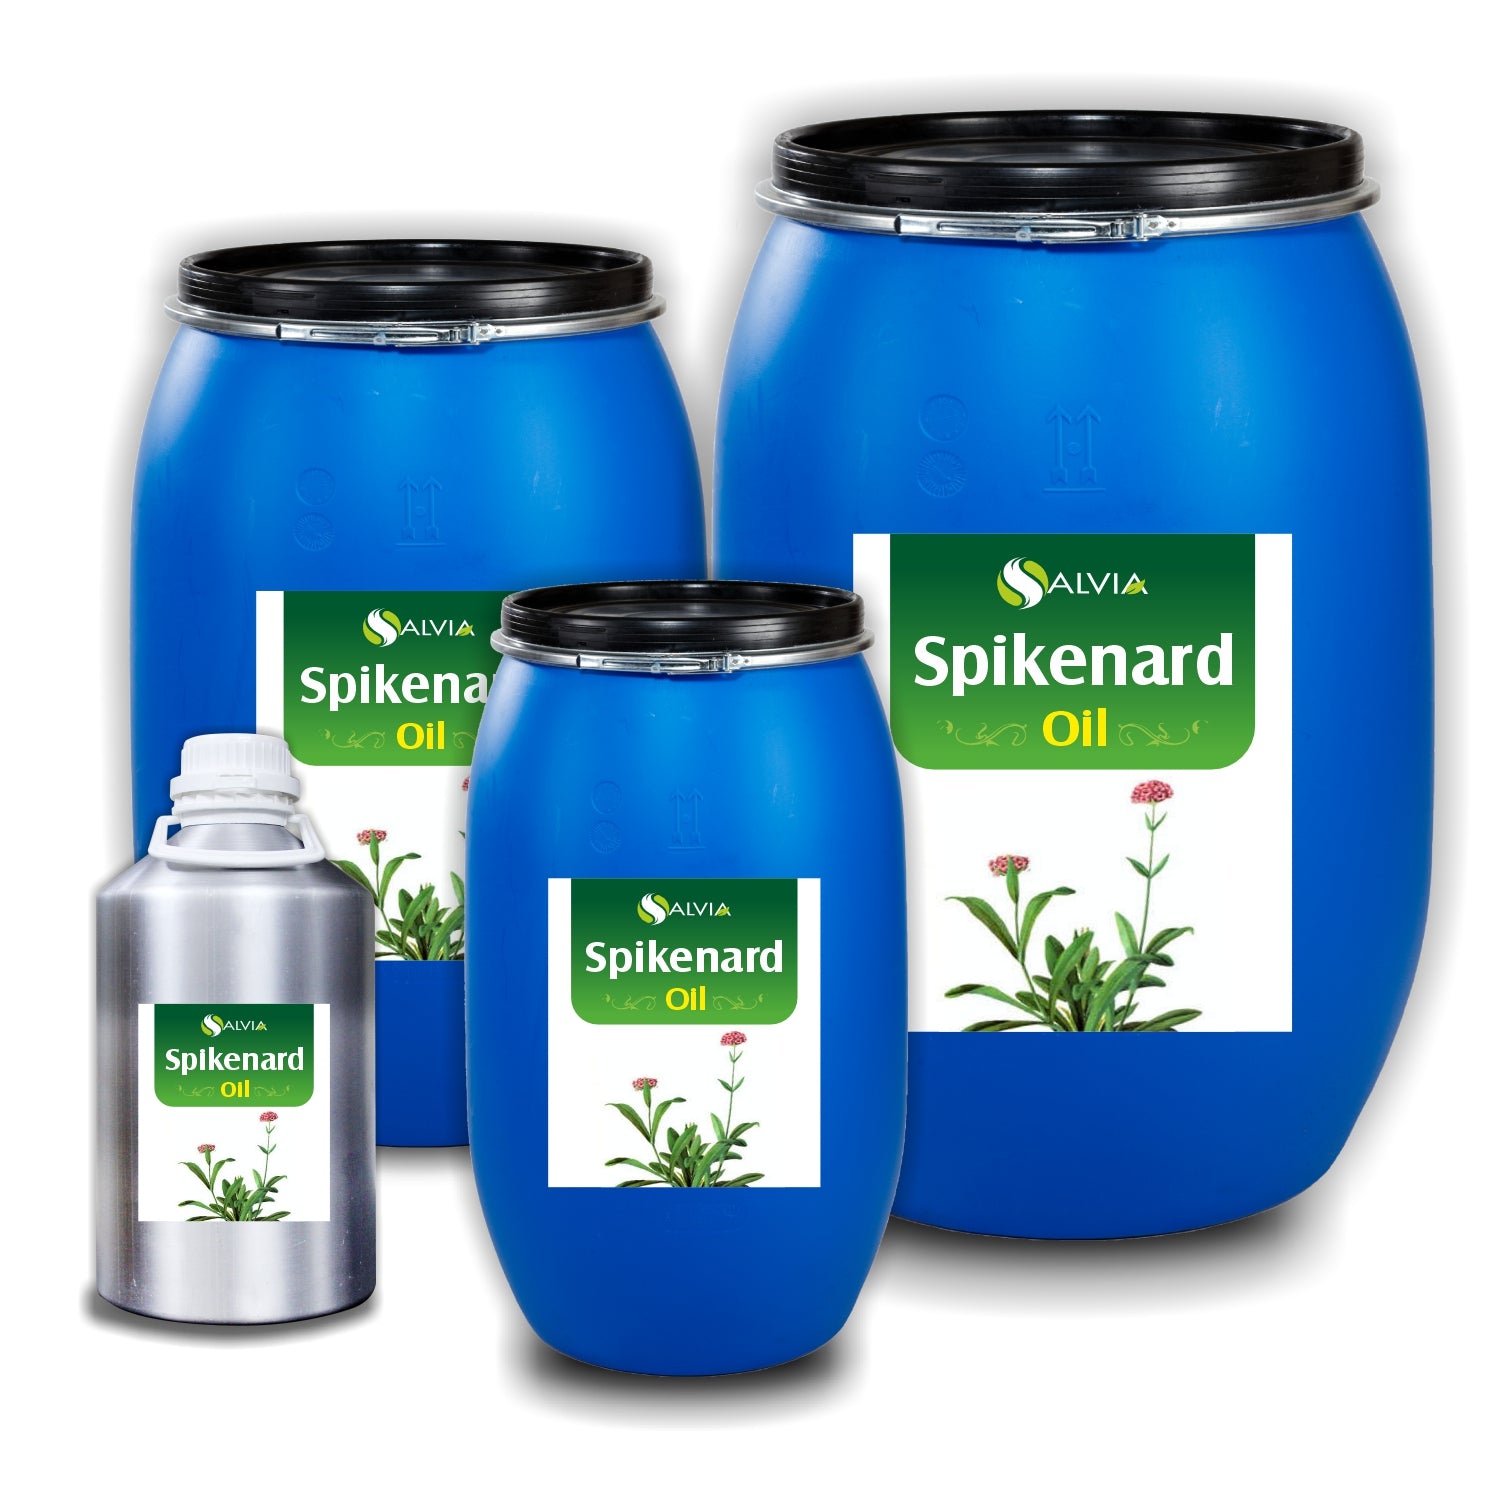 Salvia Natural Essential Oils 2000ml Spikenard Oil (Nardostachys jatamansi) Natural Essential Oil